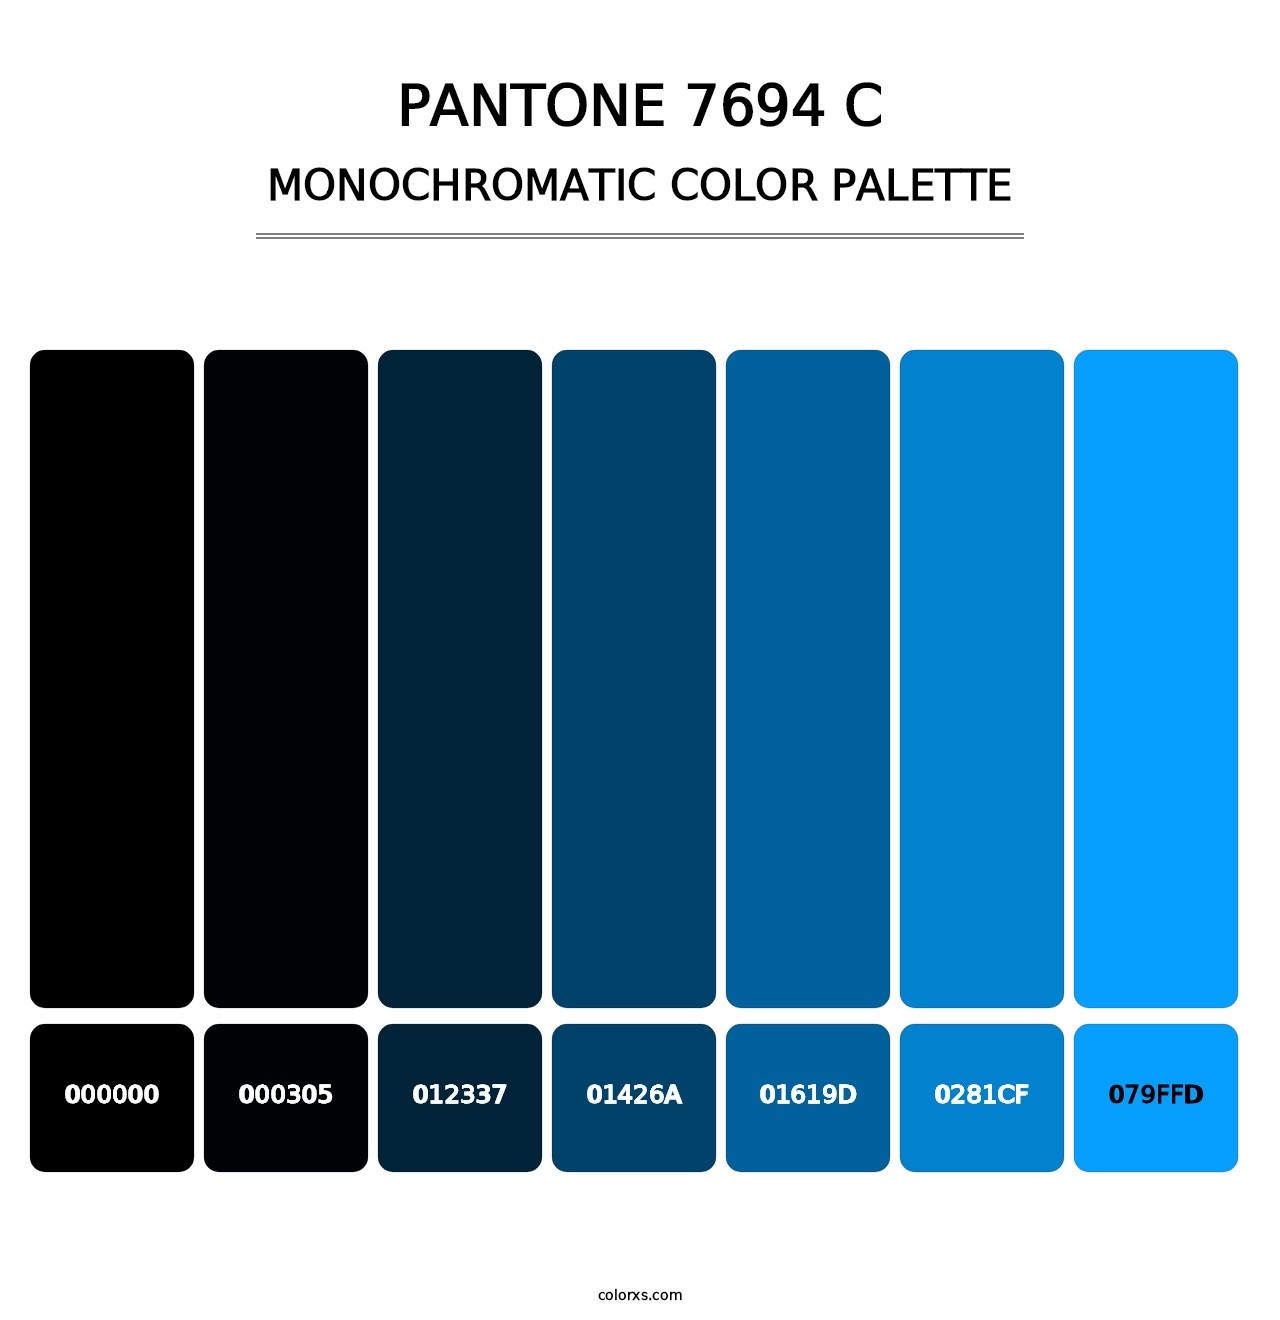 PANTONE 7694 C - Monochromatic Color Palette